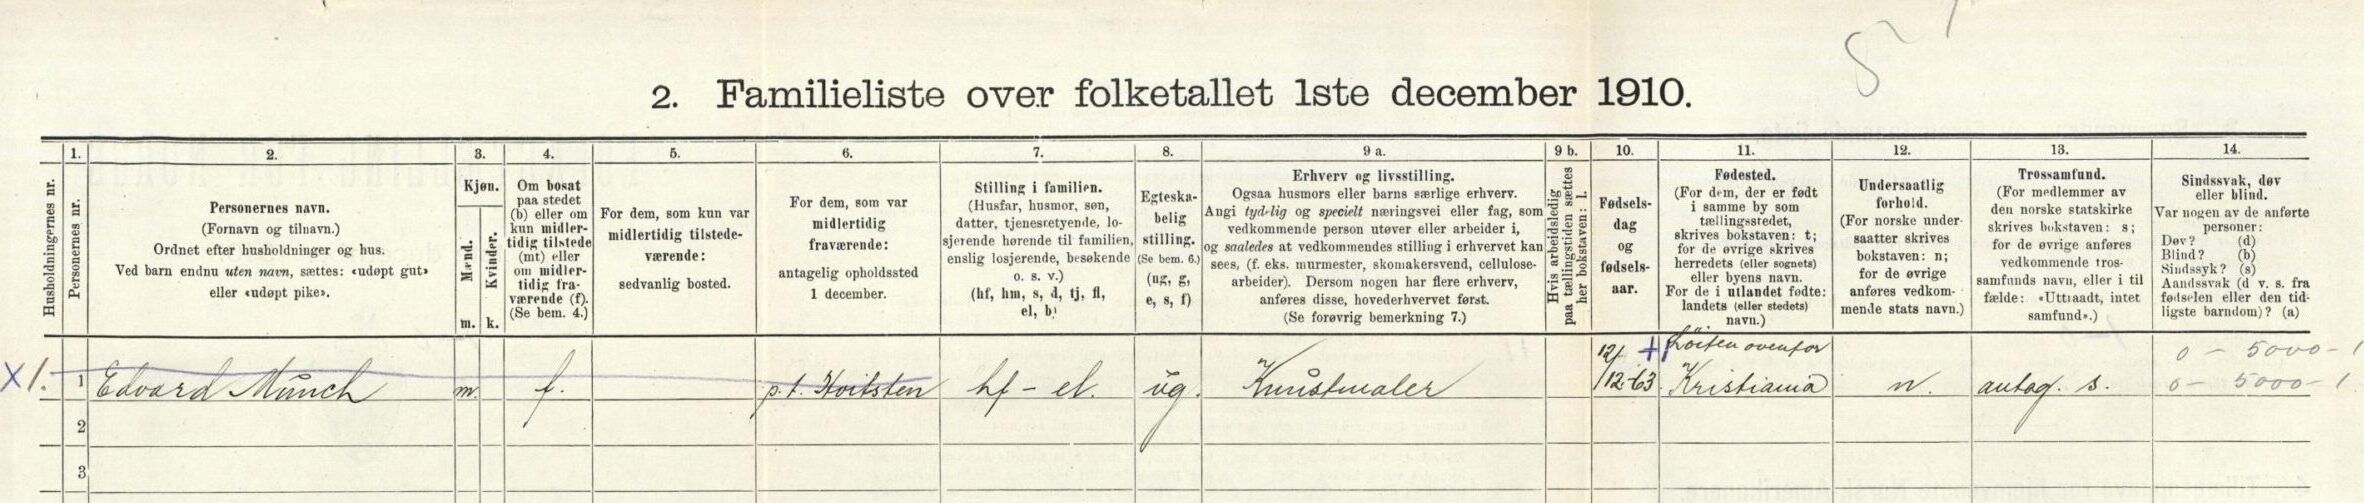 Edvard Munch in der Volkszählung von 1910 in Norwegen auf MyHeritage